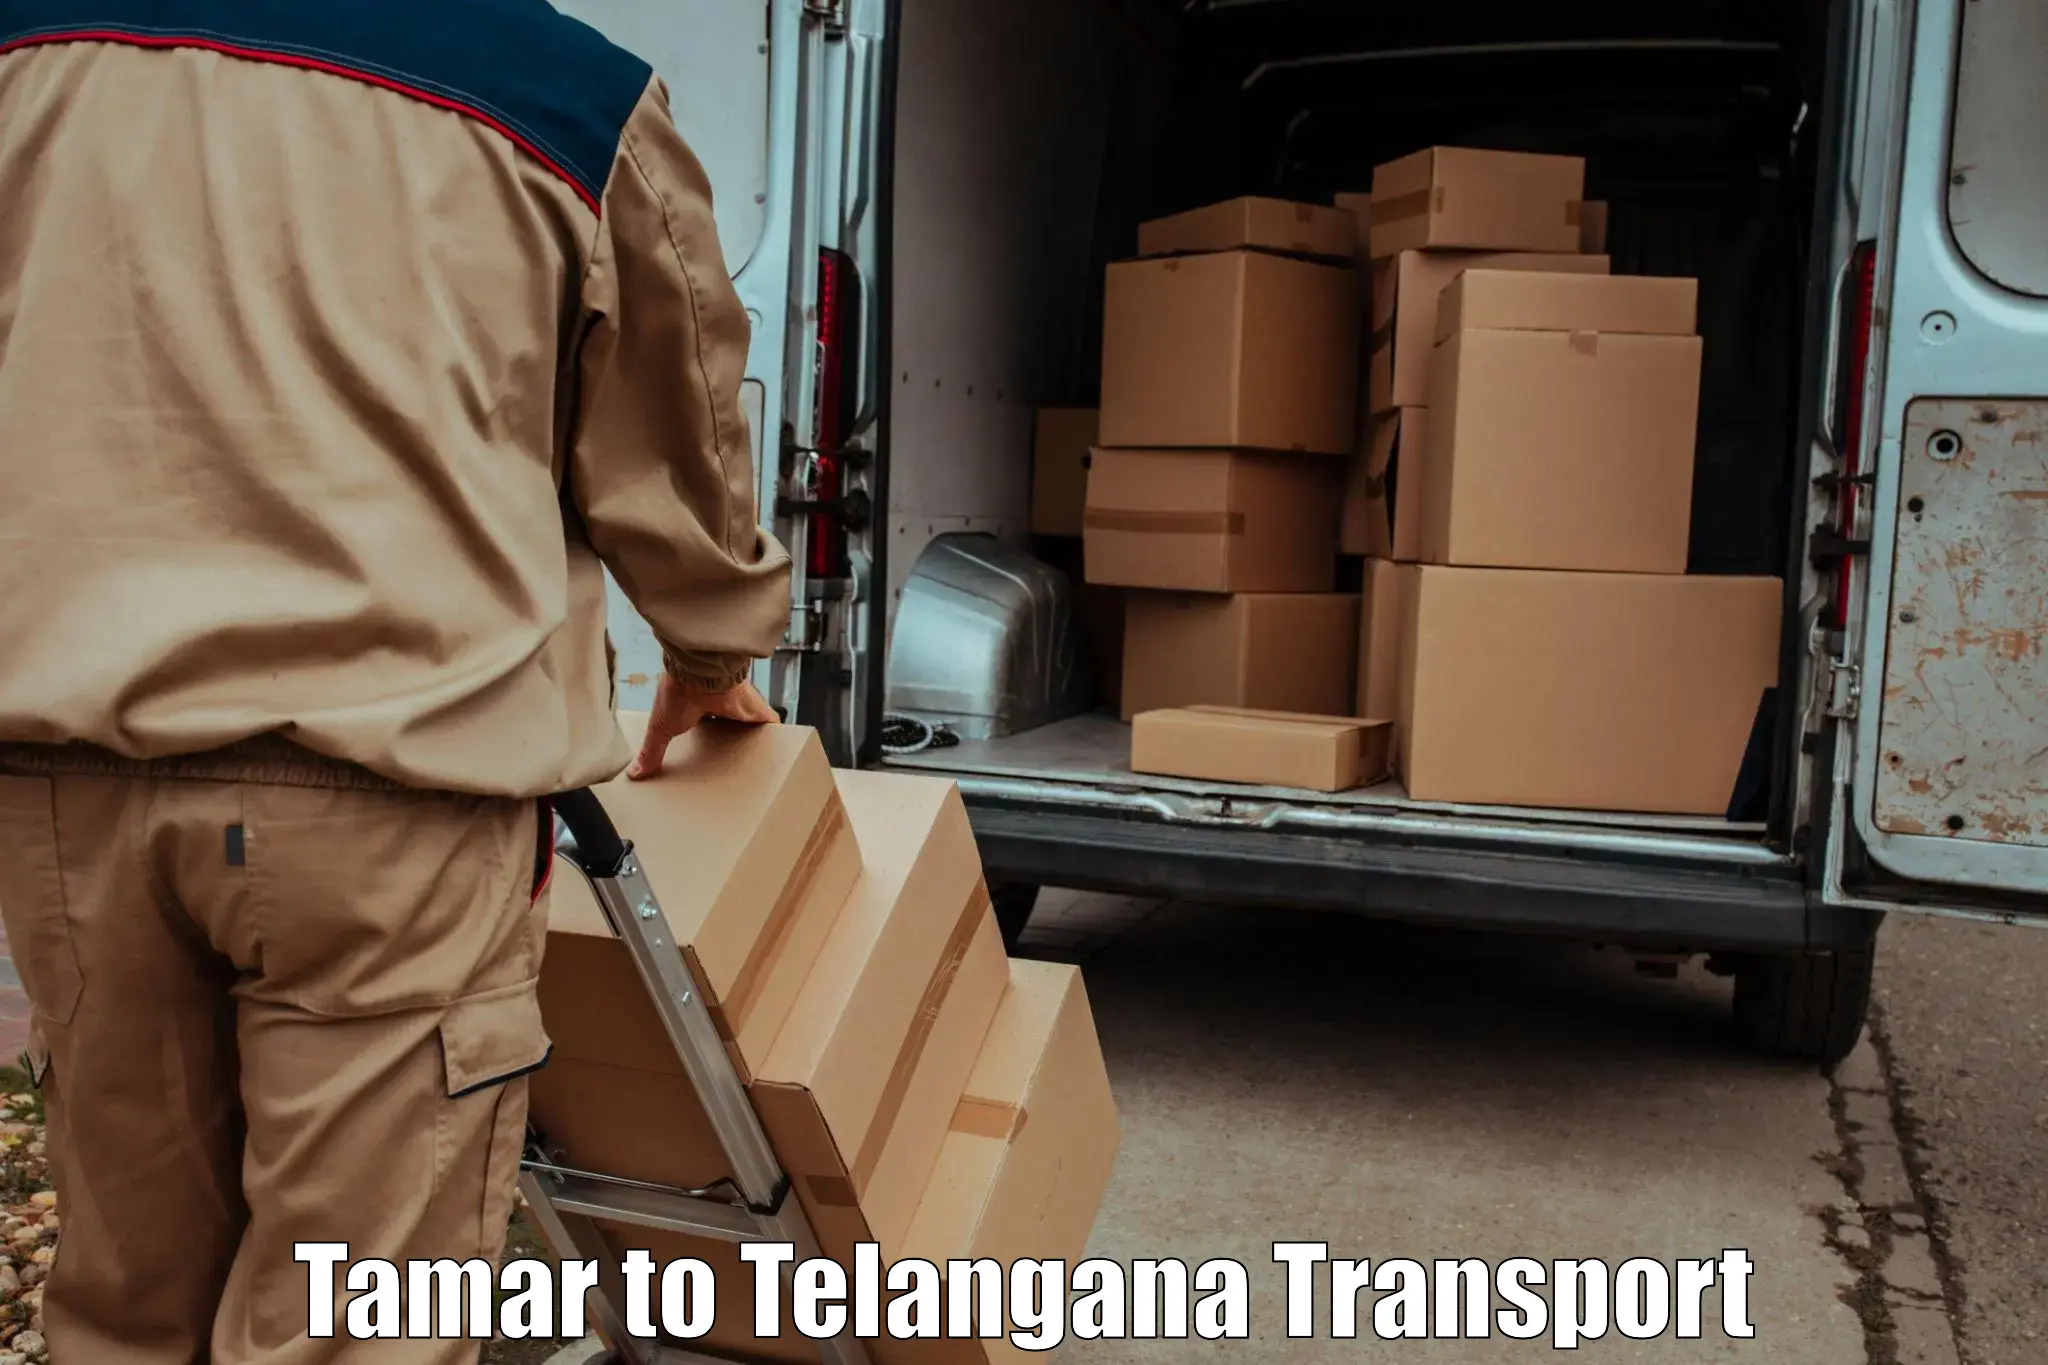 Pick up transport service Tamar to Jadcherla